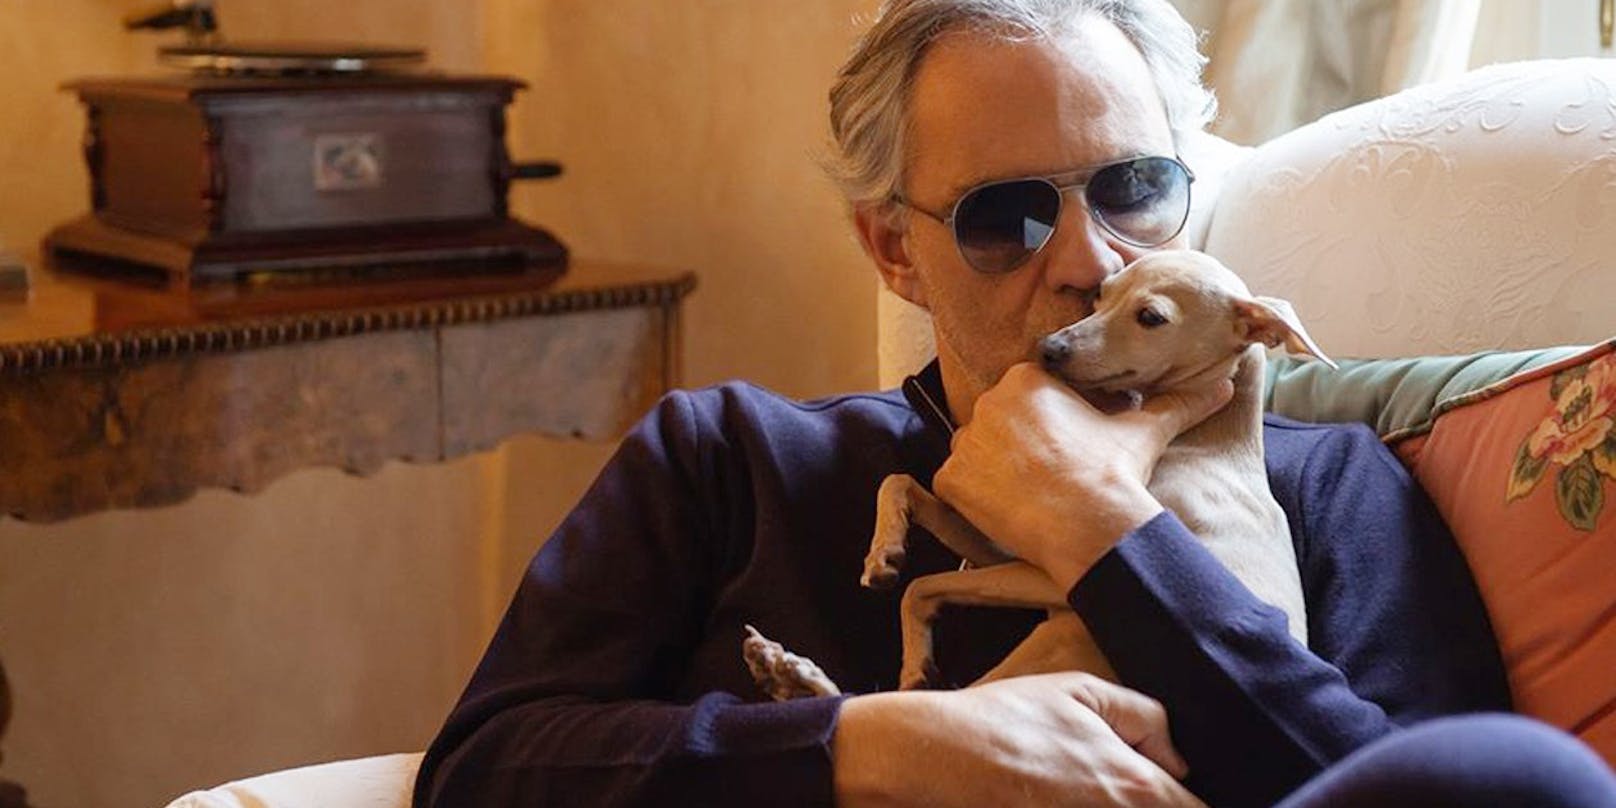 Andrea Bocelli hat Hund verloren, bittet Fans um Hilfe